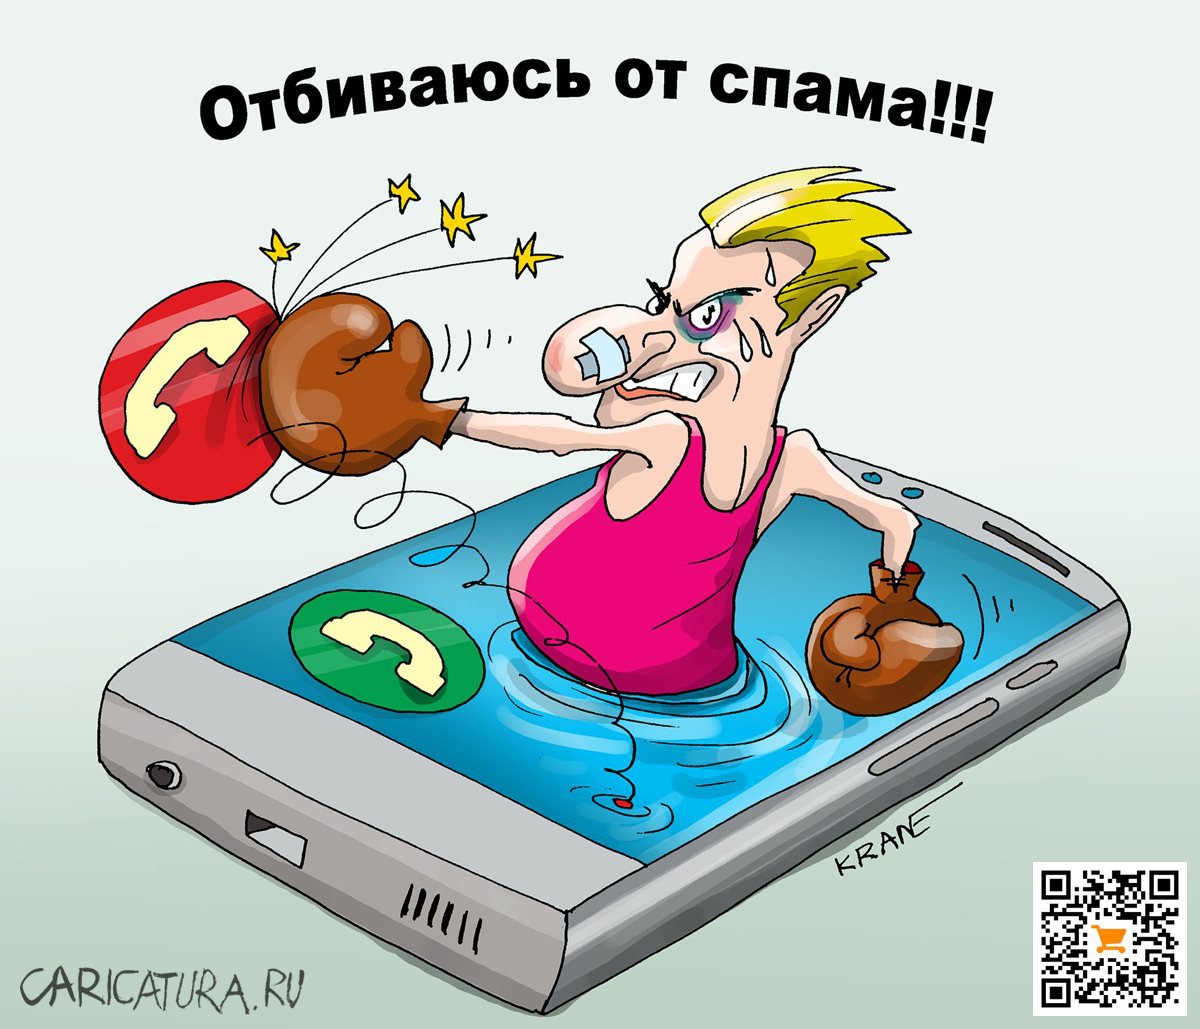 Карикатура "Сидеть в телефоне и отбиваться от спама!!!", Евгений Кран